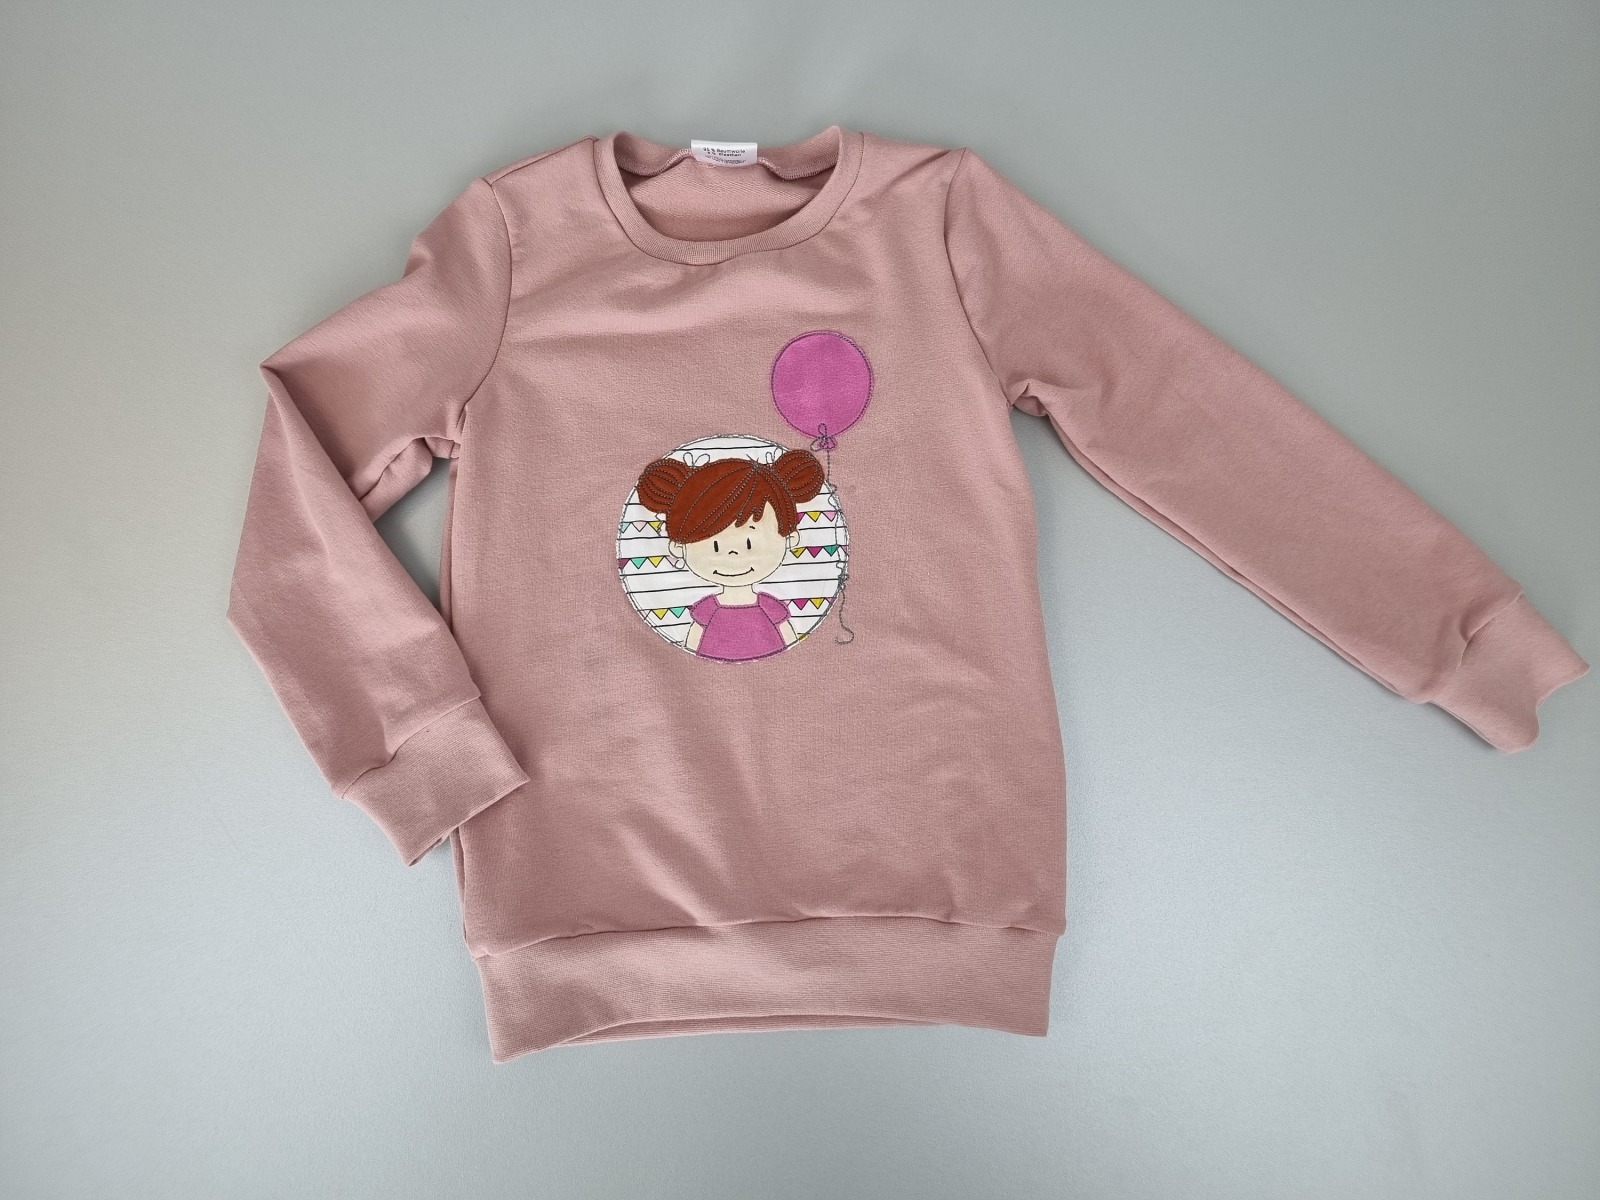 Geburtstagspullover, Pullover mit Mädchen Applikation, verschieden Farben, in Wunschgröße mit